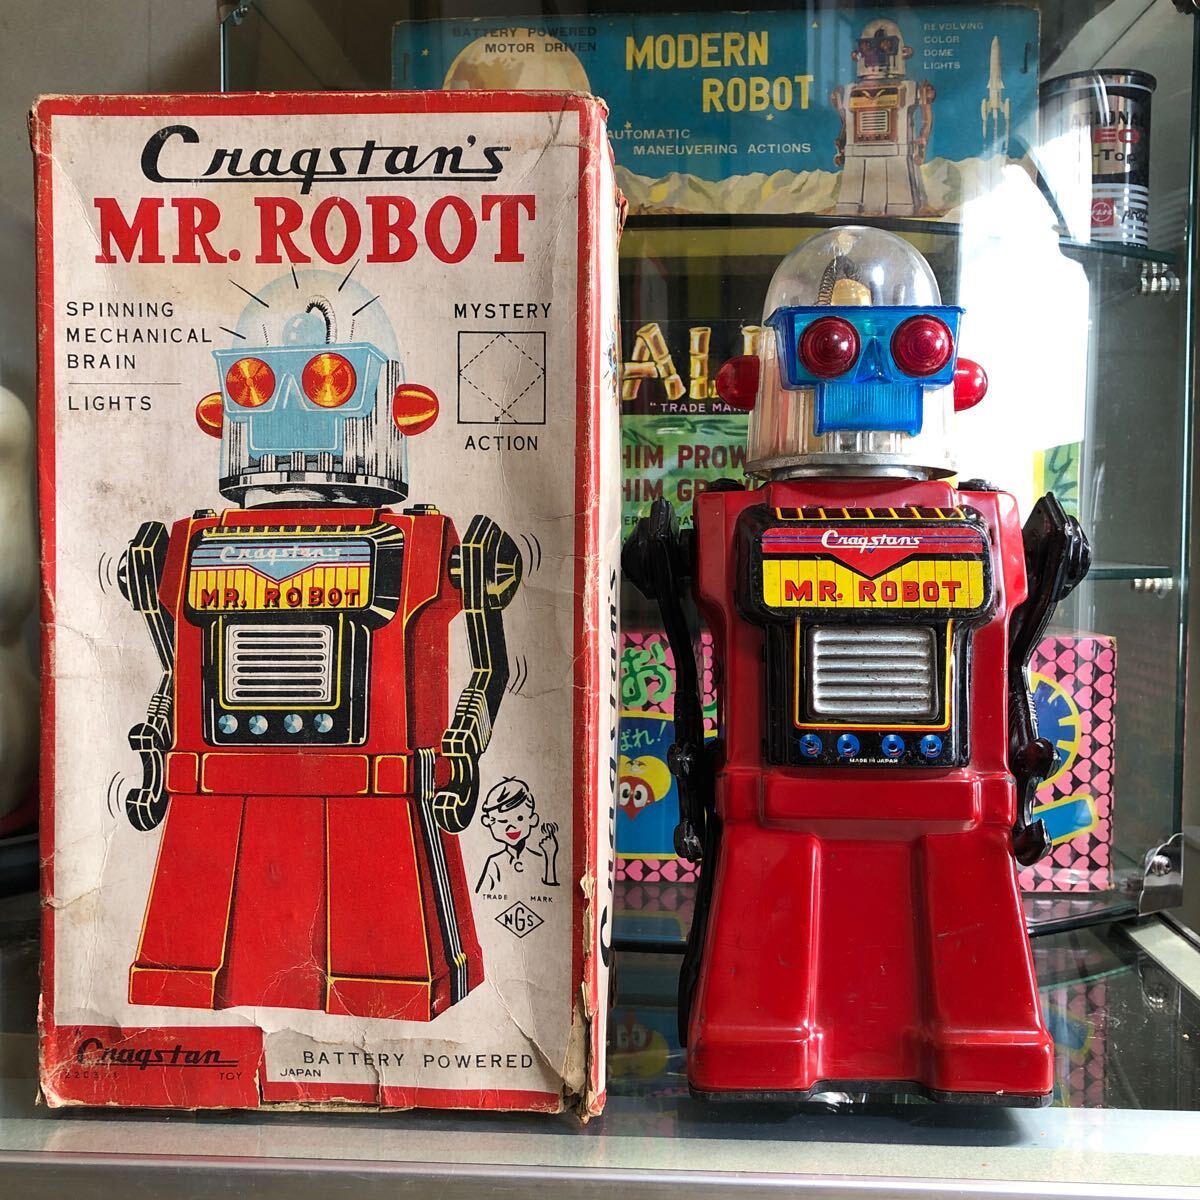 ブリキロボット YONEZAWA玩具 CRAGSTAN'S MR. ROBOT 昭和レトロ ブリキ玩具 米澤玩具 野村トーイ 電動ロボット ミスター.ロボットの画像1